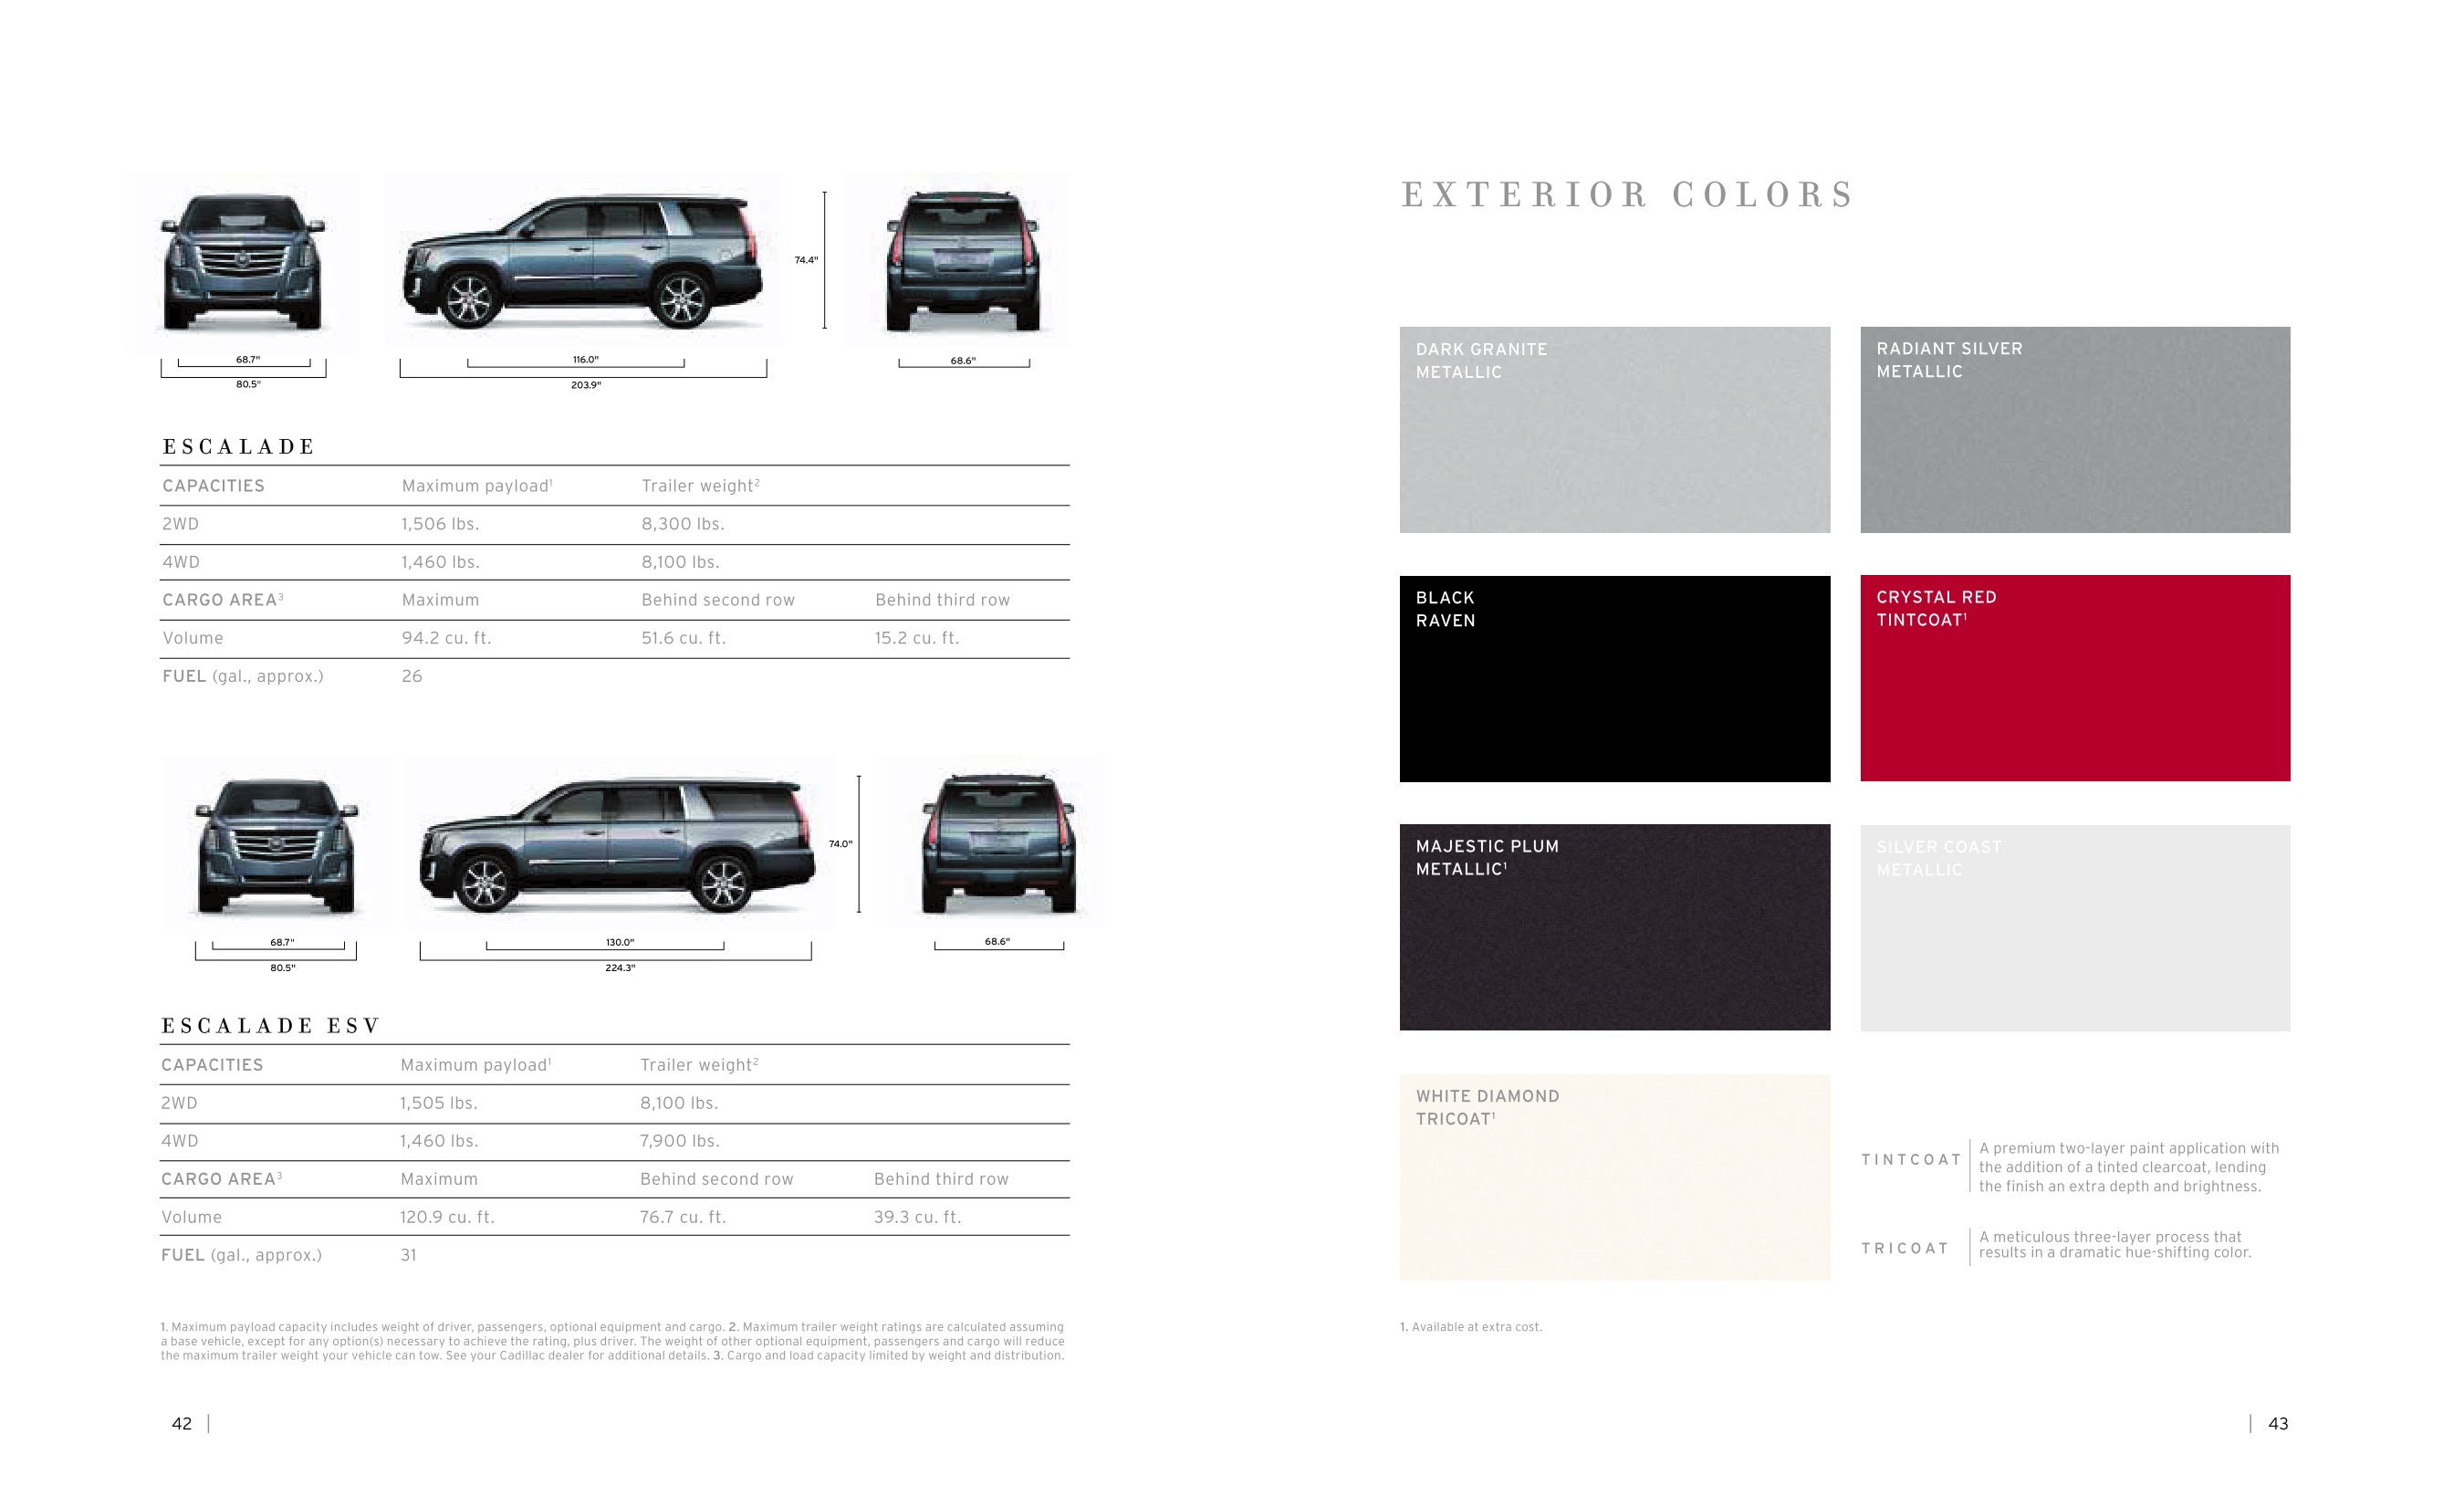 2015 Cadillac Escalade Brochure Page 4